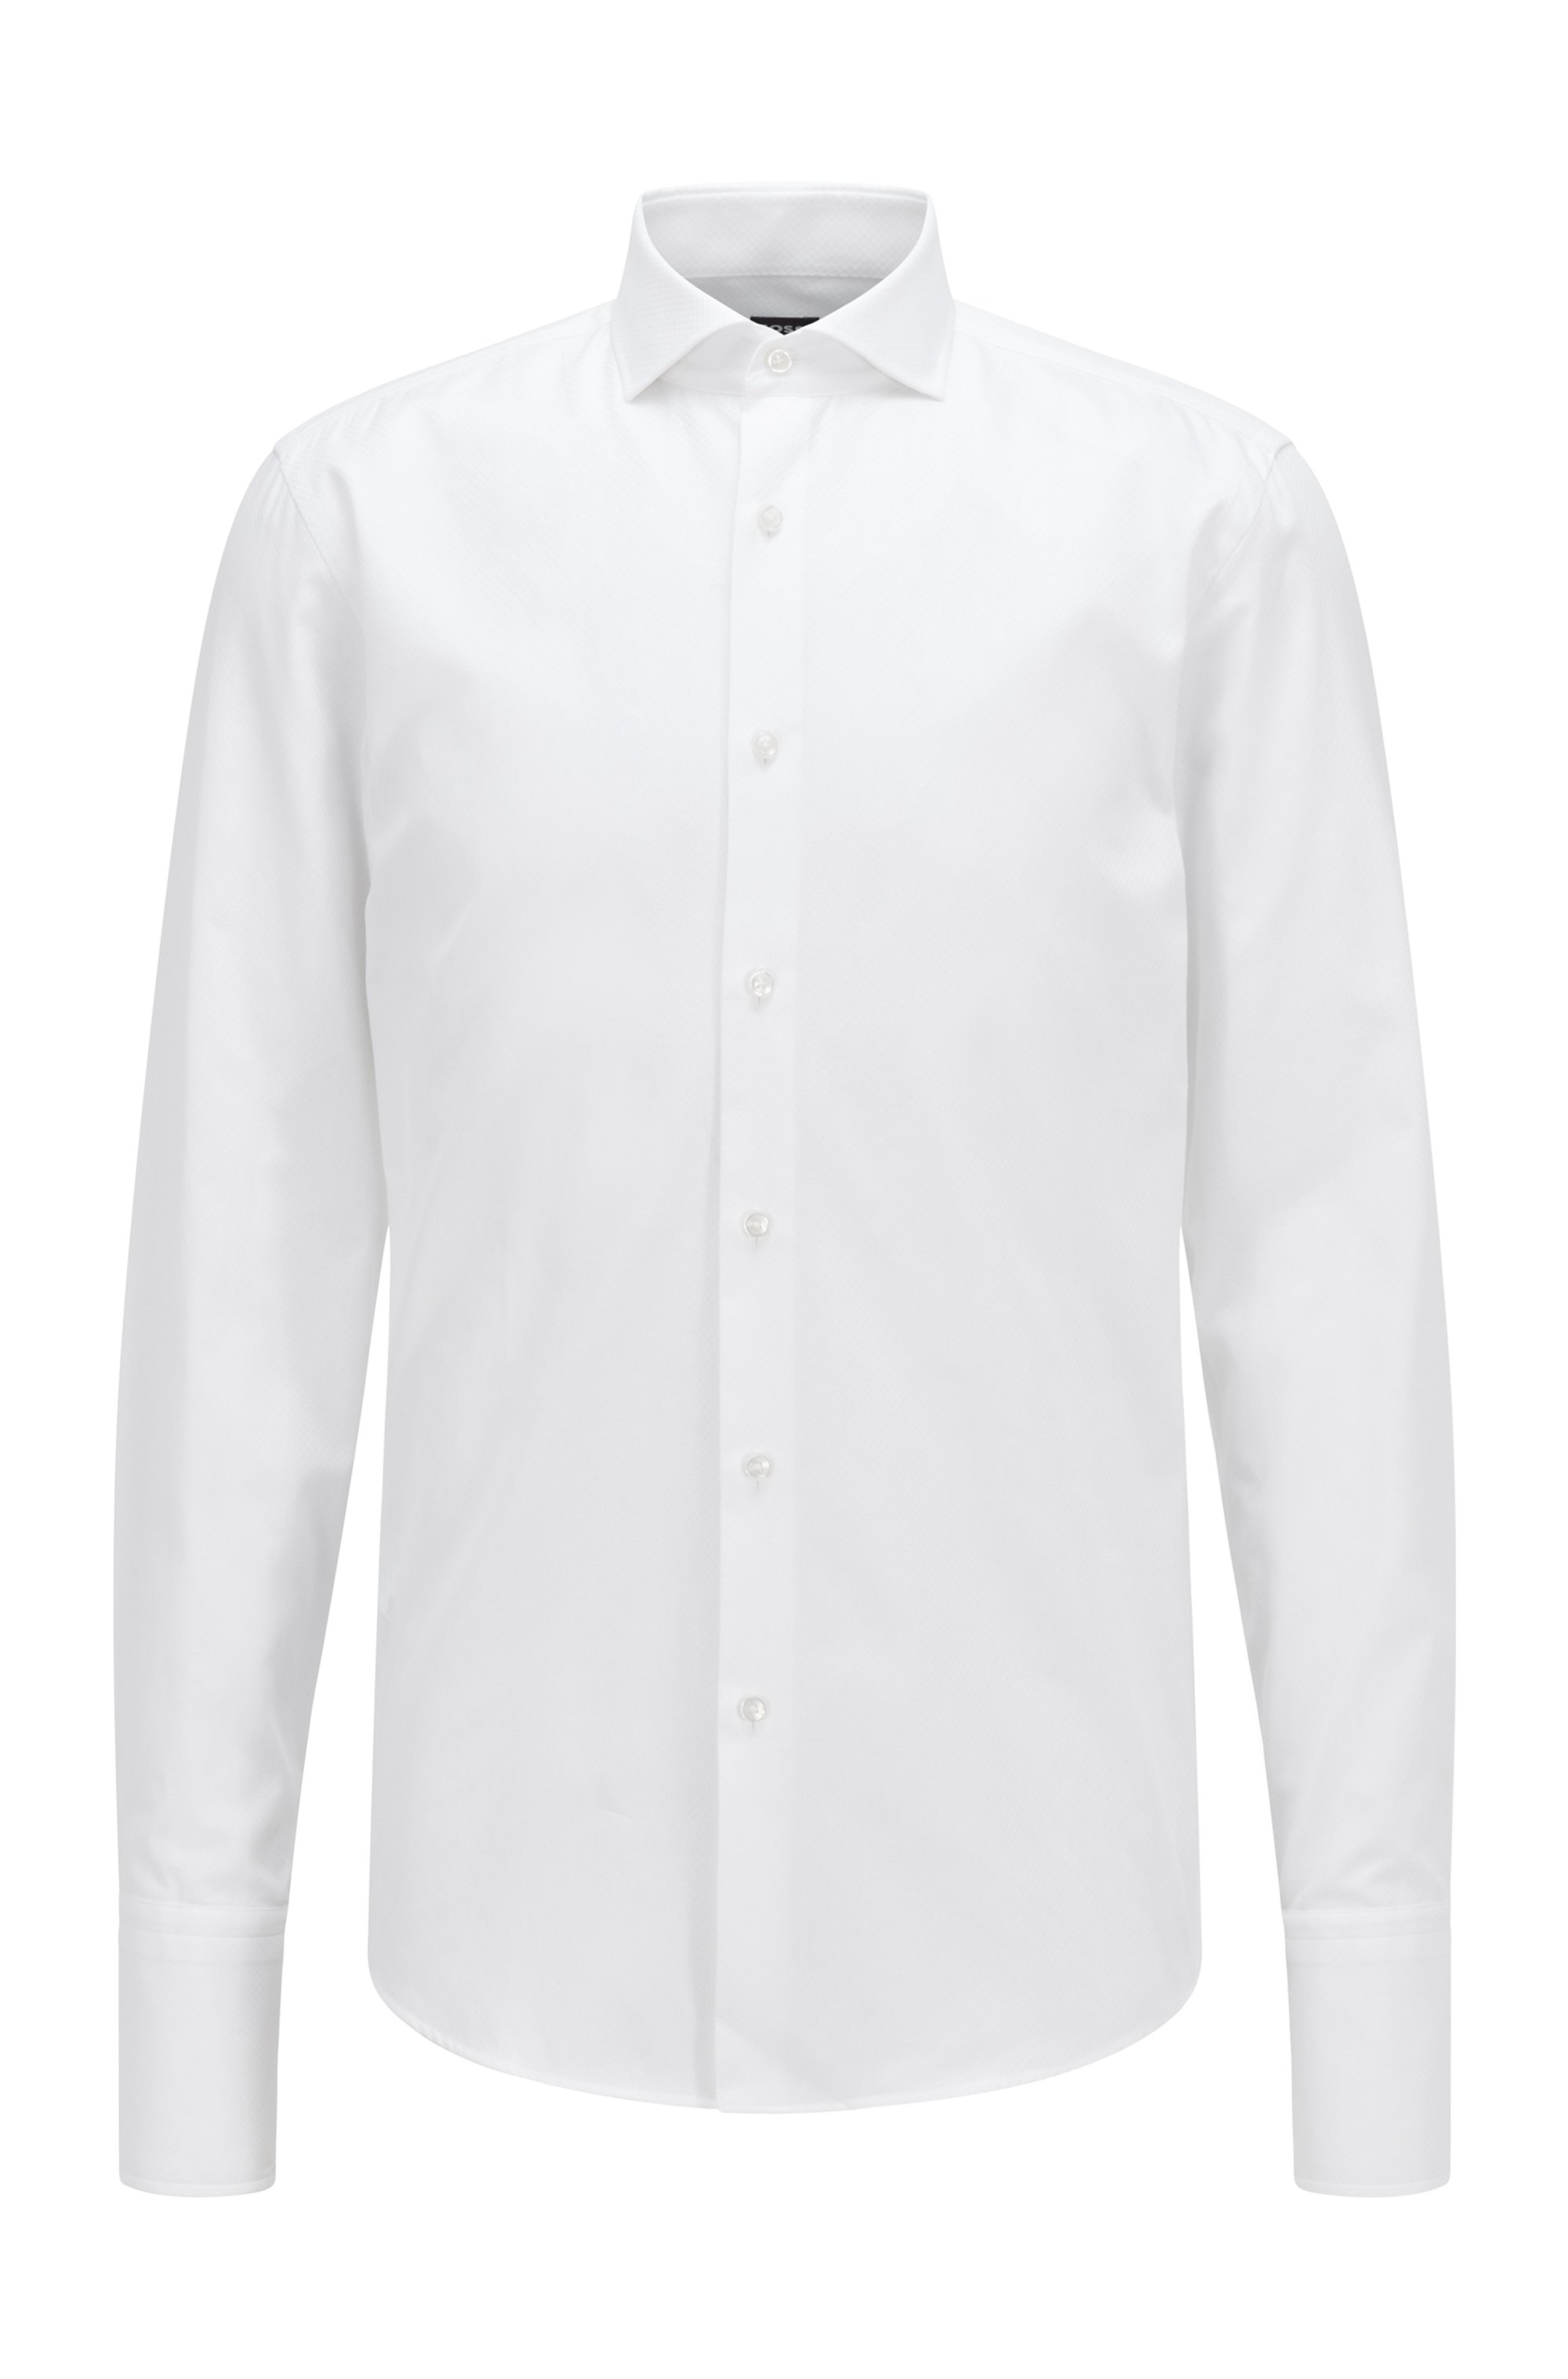 Camisa slim fit de algodón orgánico a cuadros, Blanco